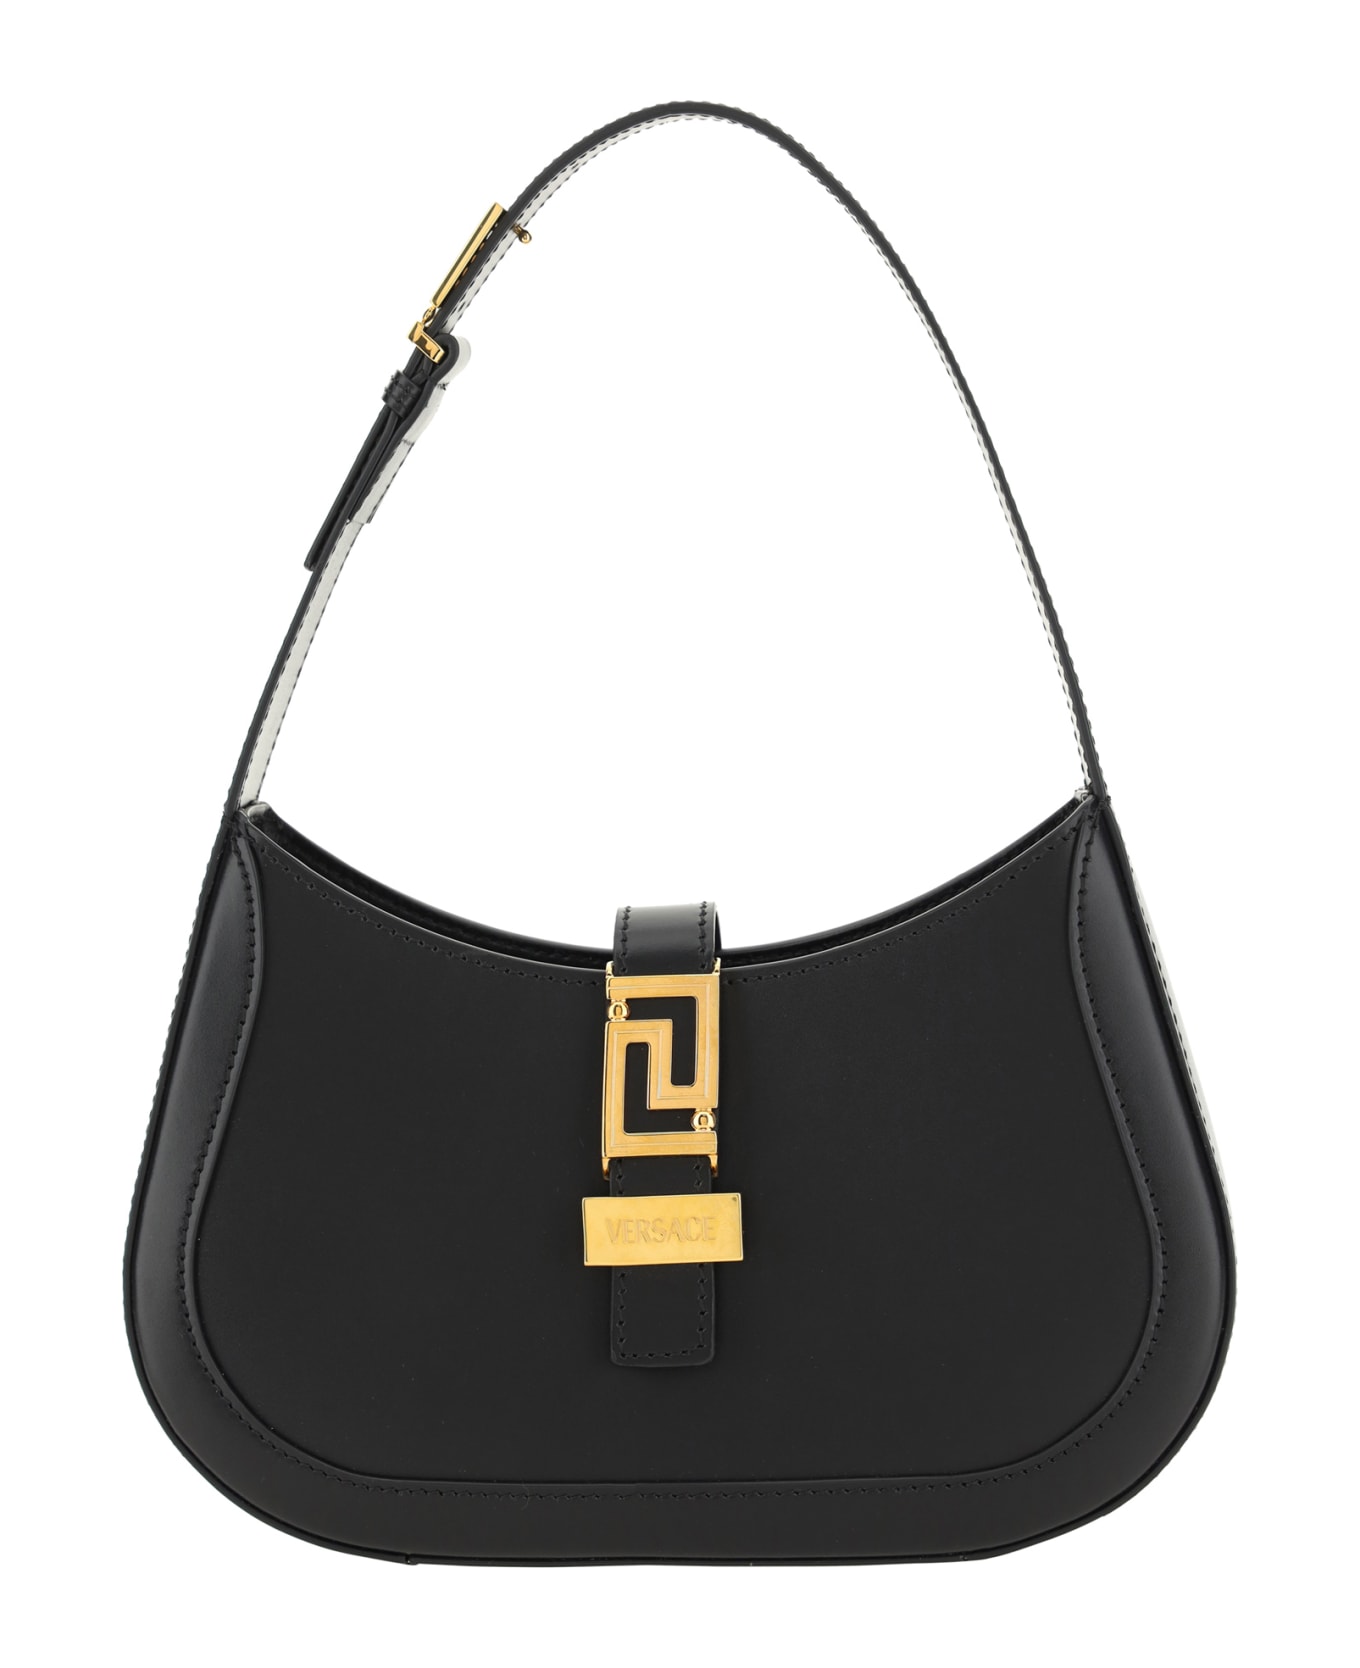 Versace Greca Goddess Handbags - BLACK トートバッグ